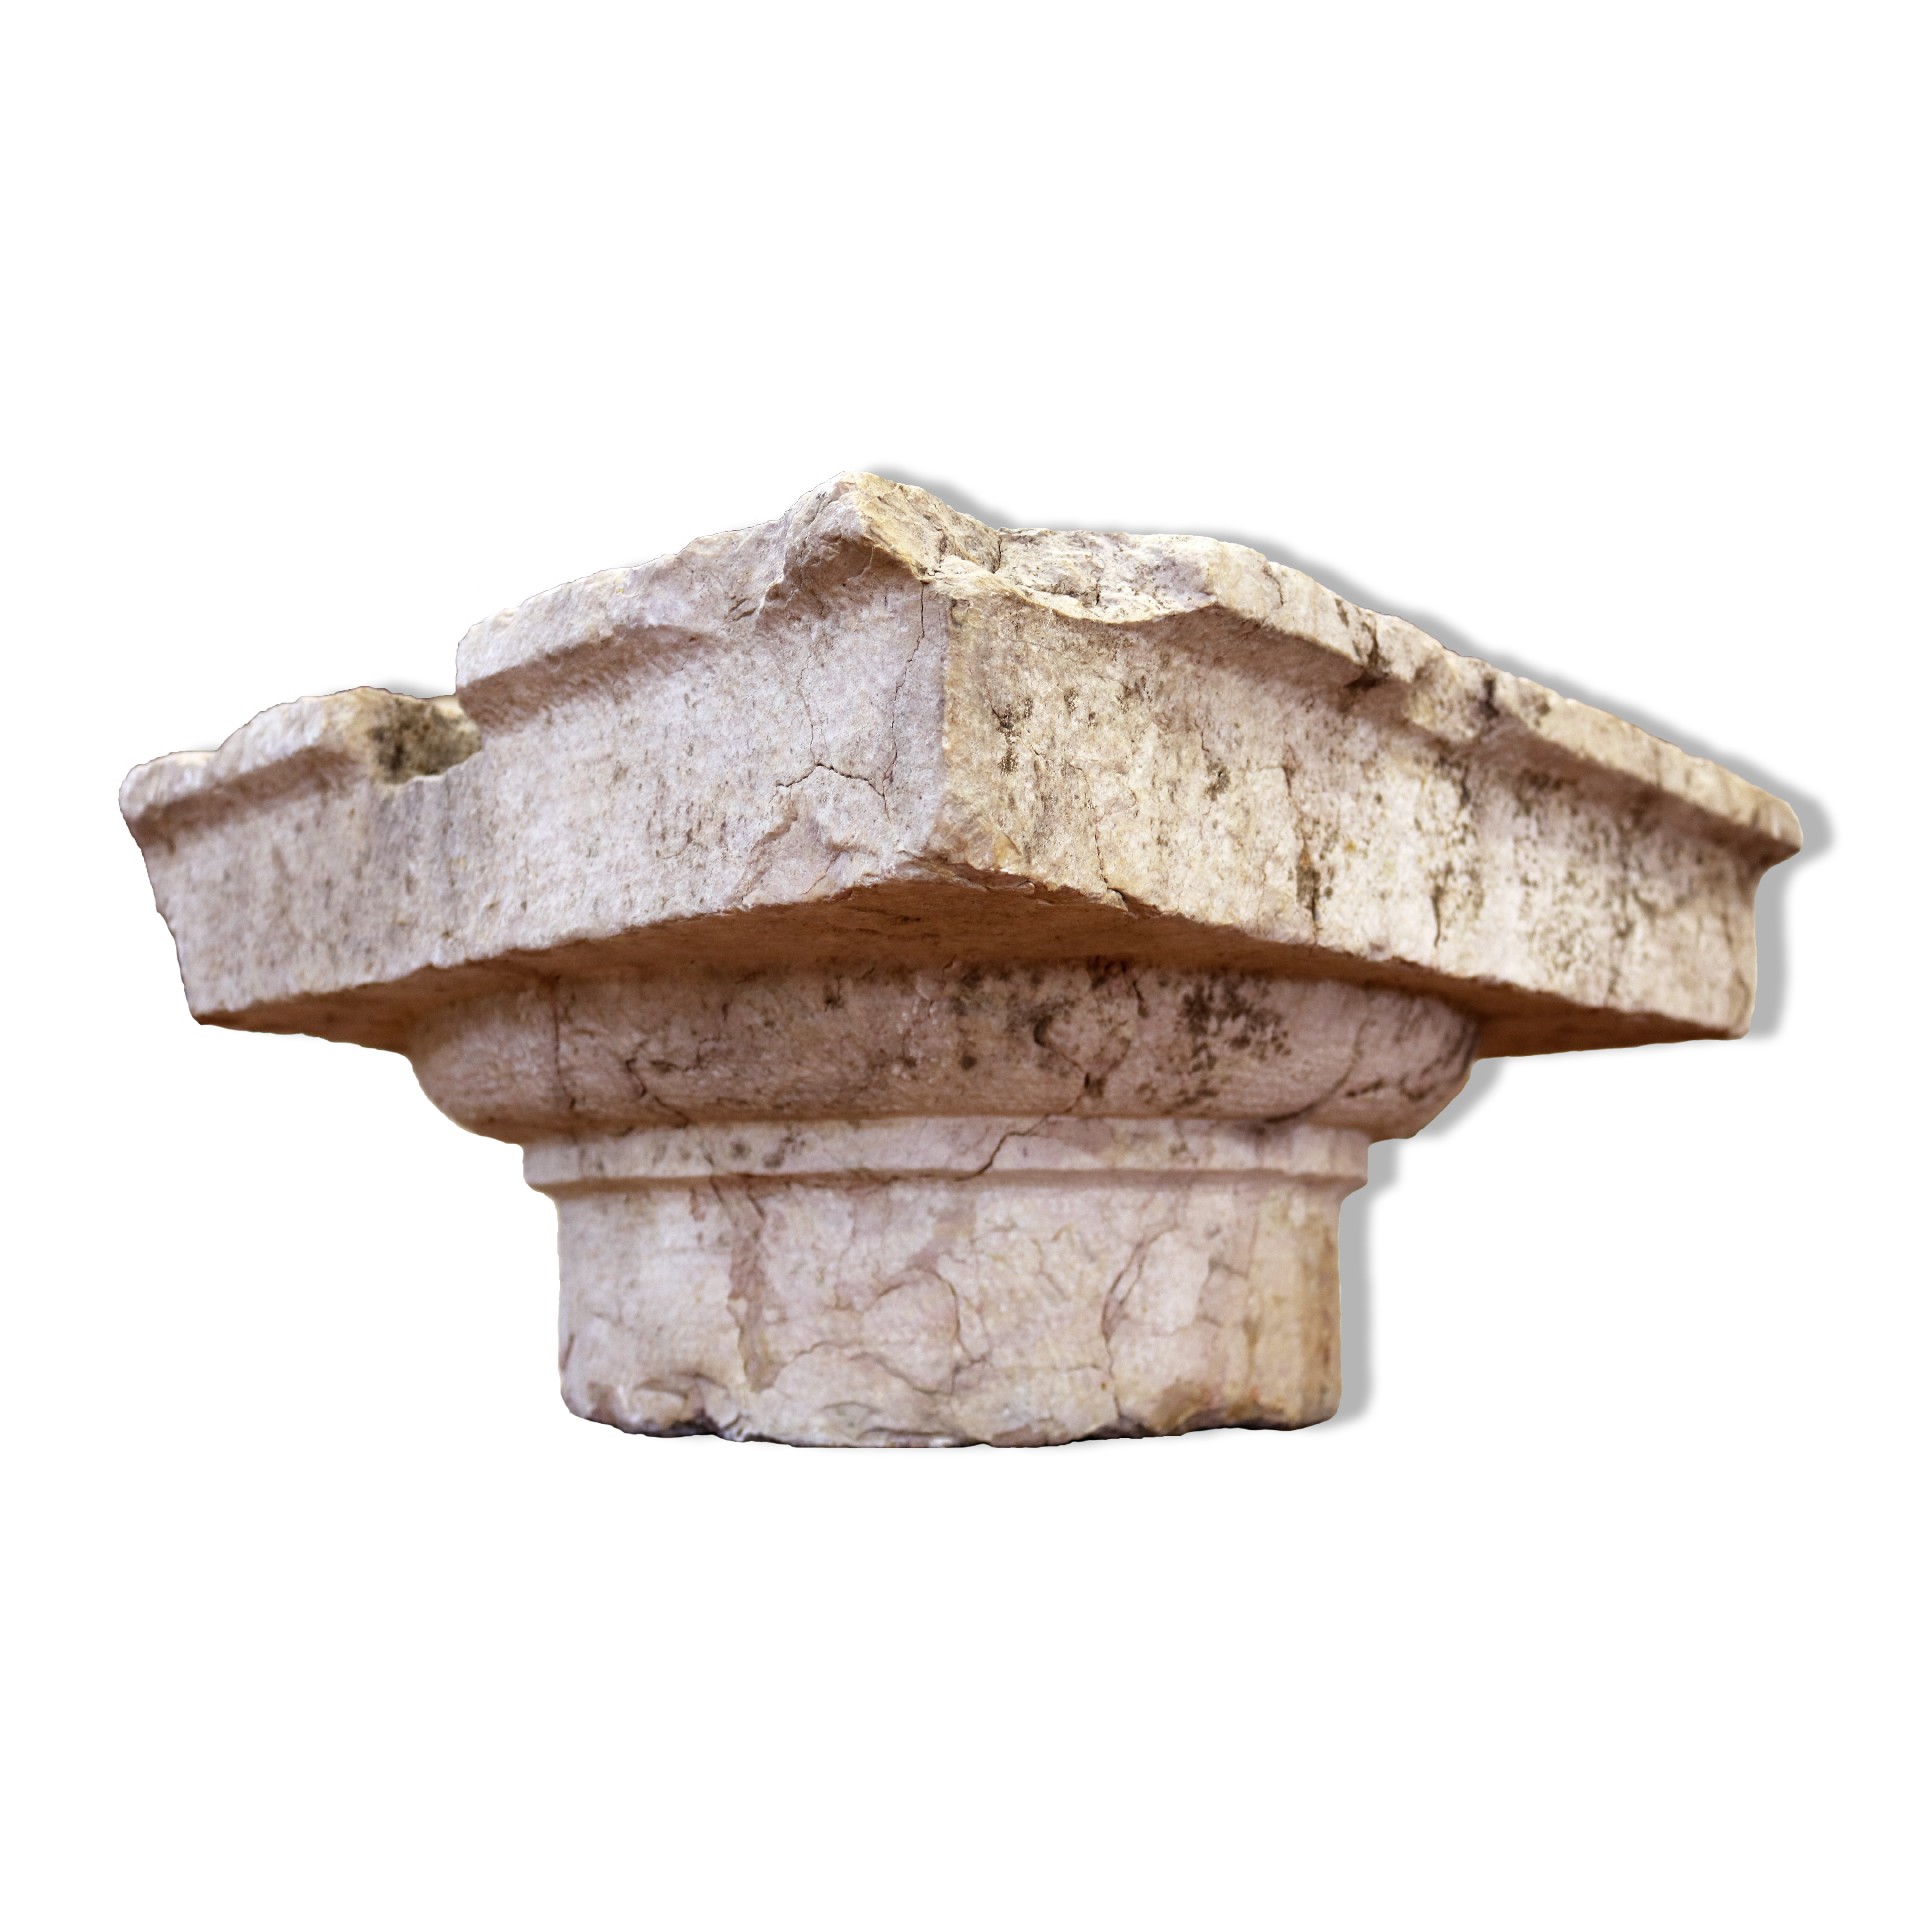 Antico capitello in marmo. - Capitelli basi per colonne - Architettura - Prodotti - Antichità Fiorillo